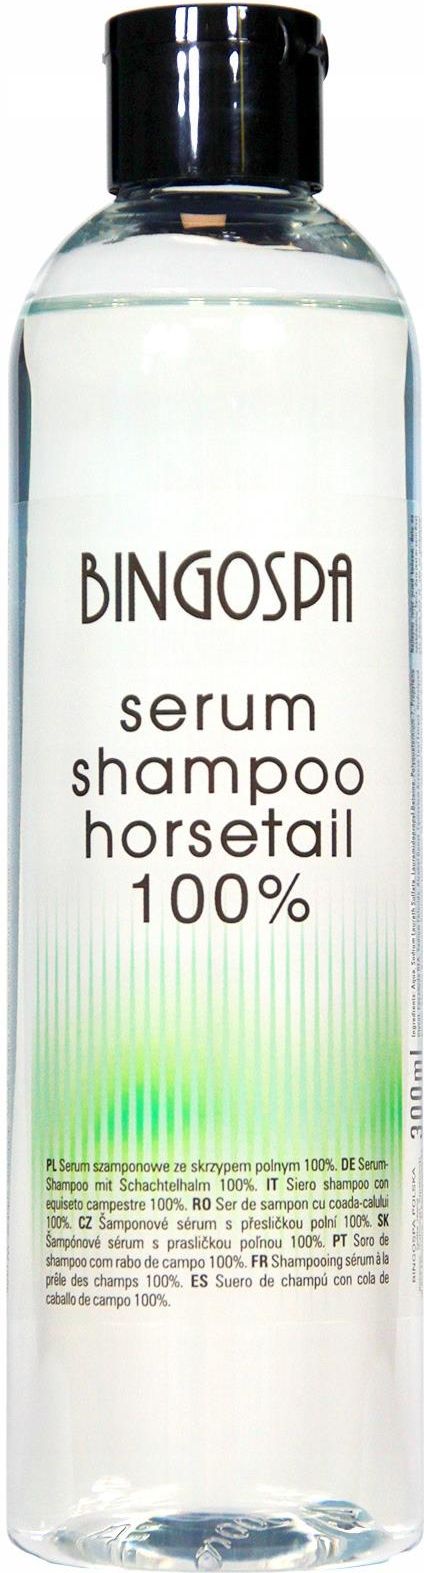 bingospa szampon z olejkiem arganowym 100ml